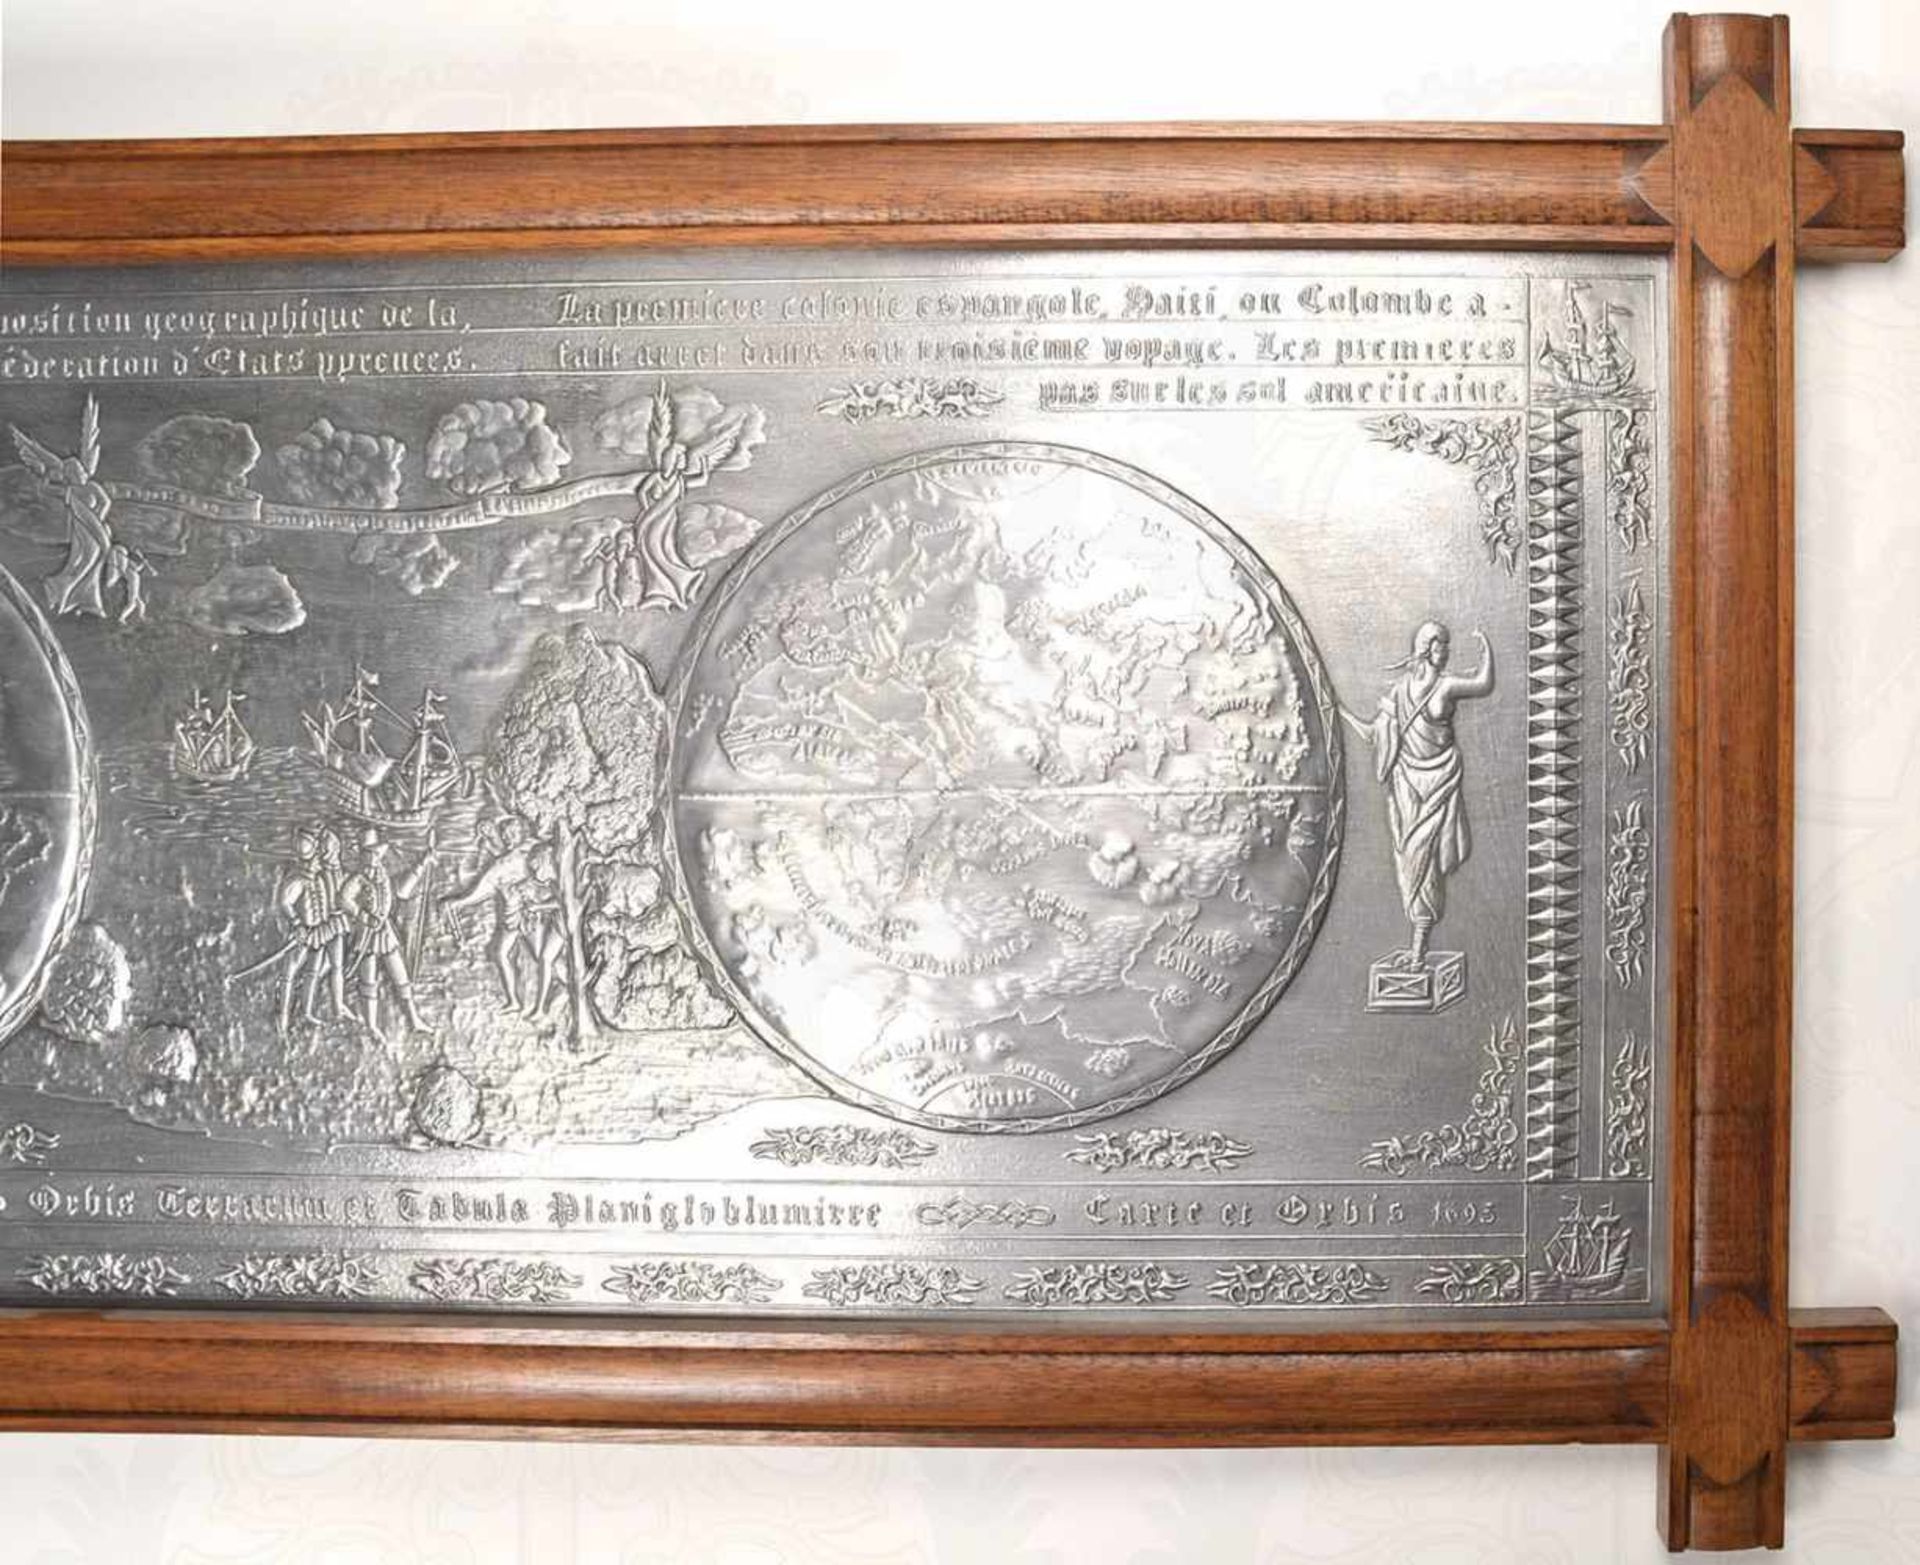 WANDRELIEF „OCUPANTIS TERRA NOVA“, erhabene Darstellung der Landung von Christoph Kolumbus in - Bild 2 aus 4